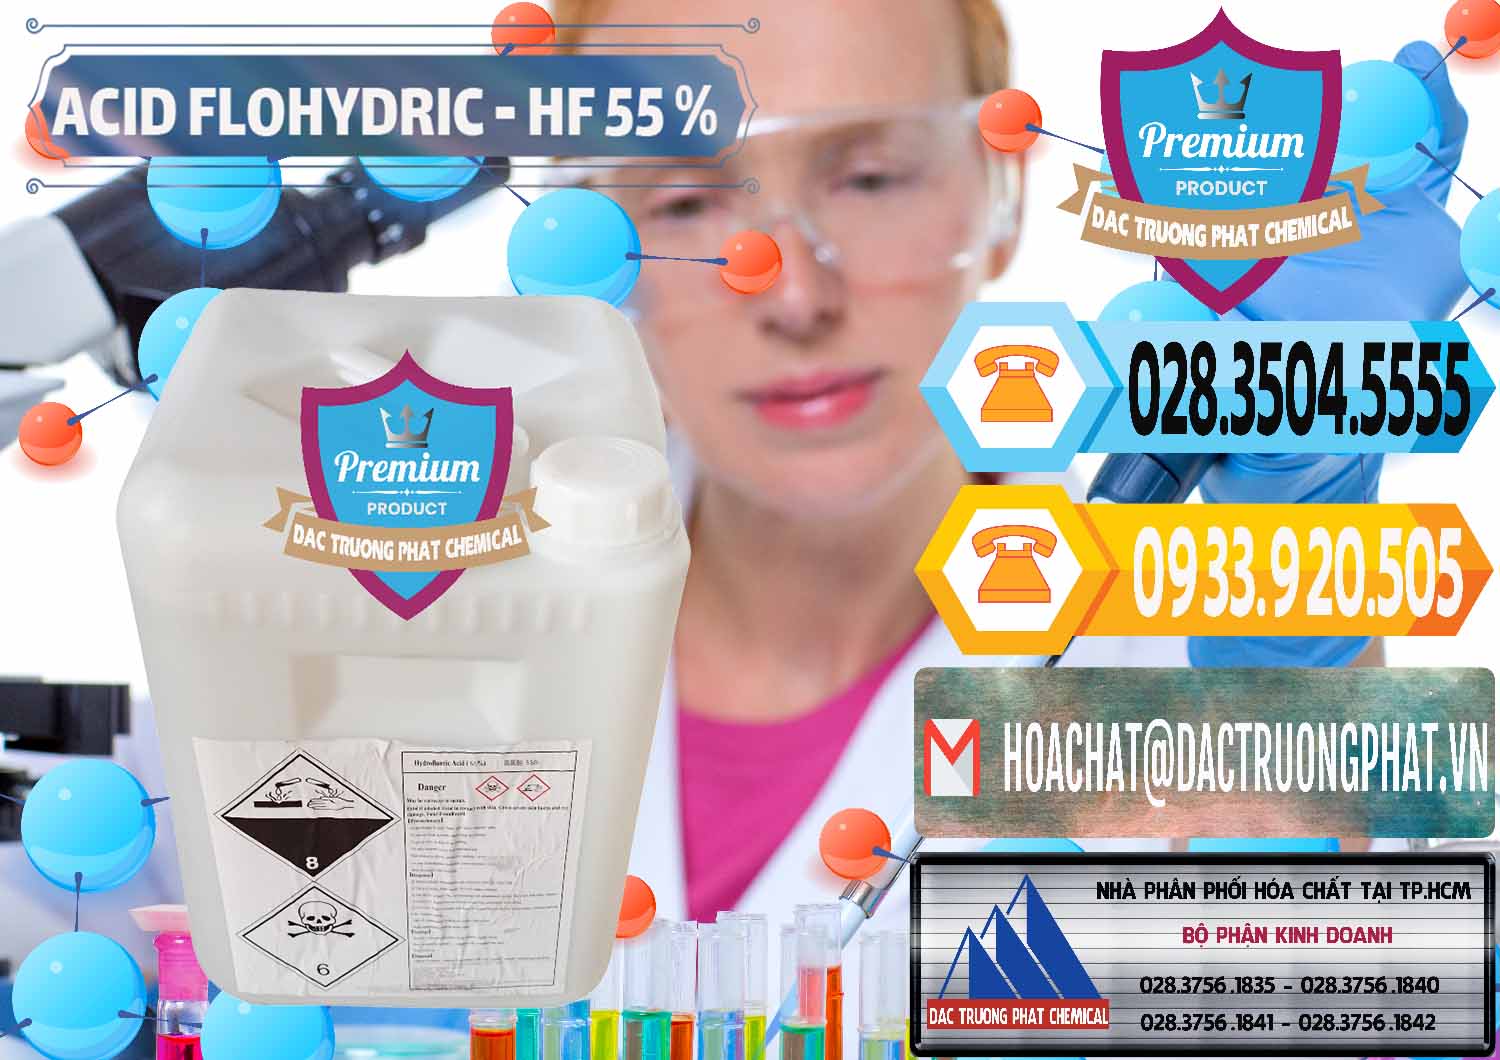 Nơi chuyên kinh doanh ( bán ) Axit HF - Acid HF 55% Can Trắng Trung Quốc China - 0079 - Đơn vị nhập khẩu & phân phối hóa chất tại TP.HCM - hoachattayrua.net